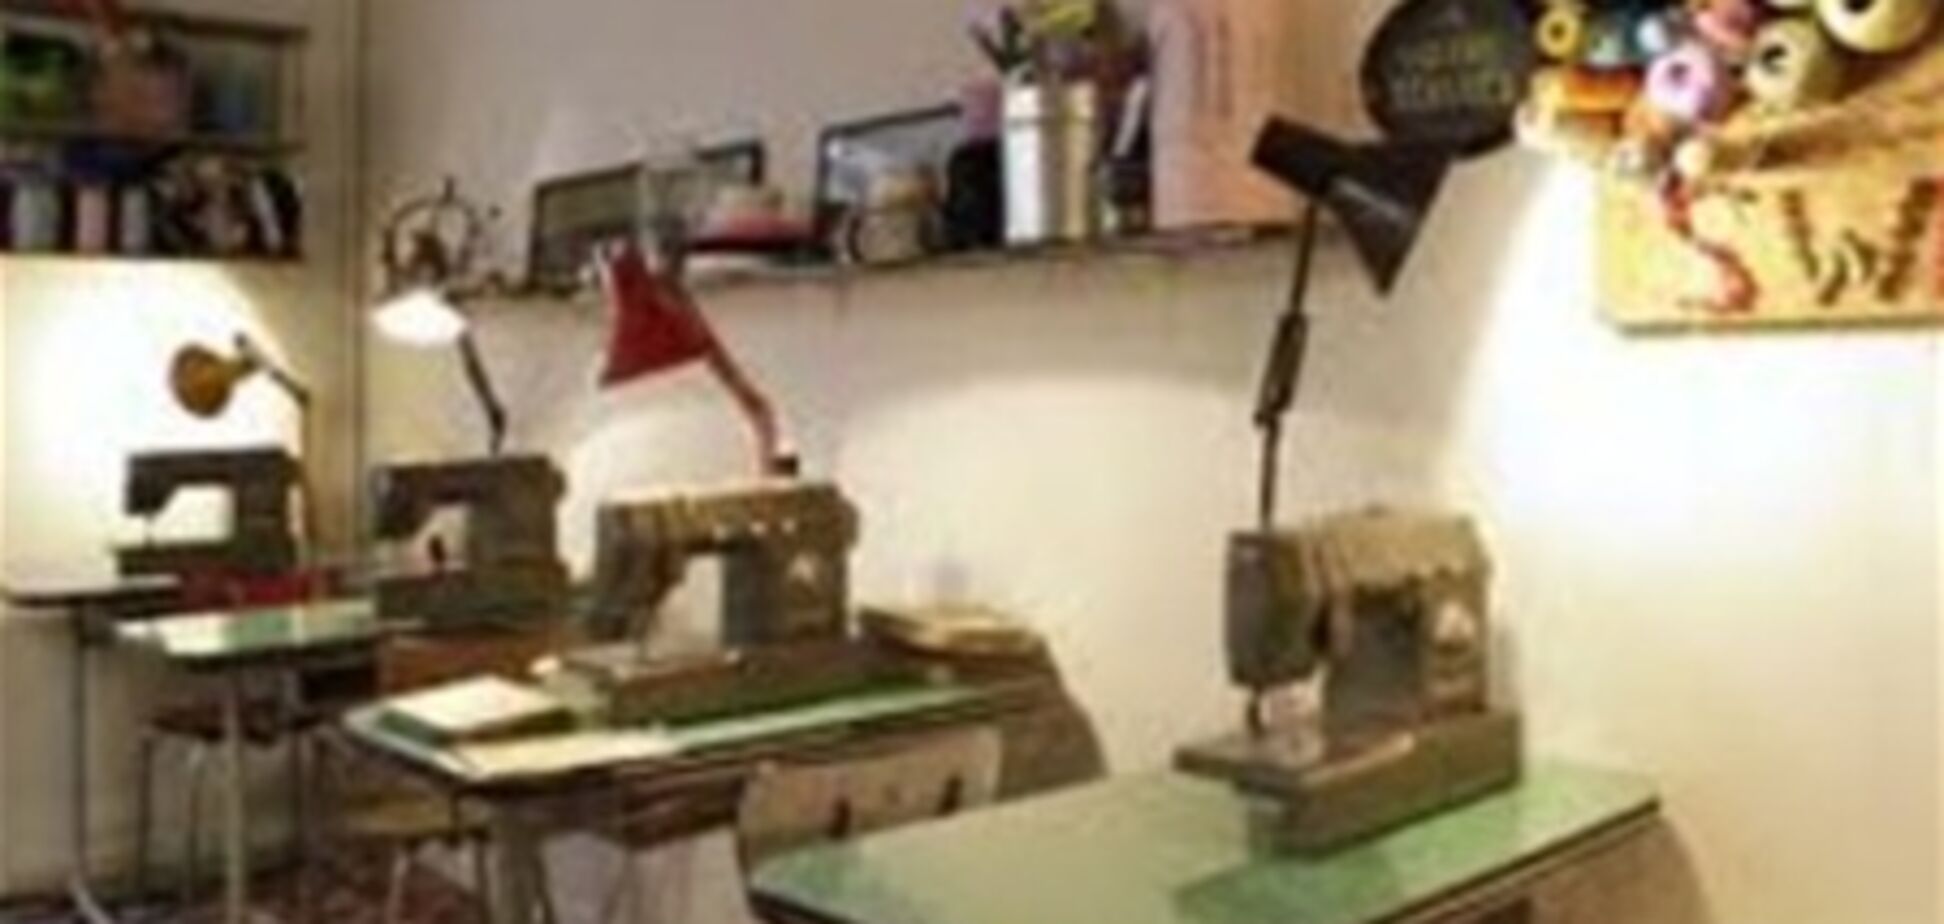 В Харькове открылось уникальное заведение - швейная кофейня